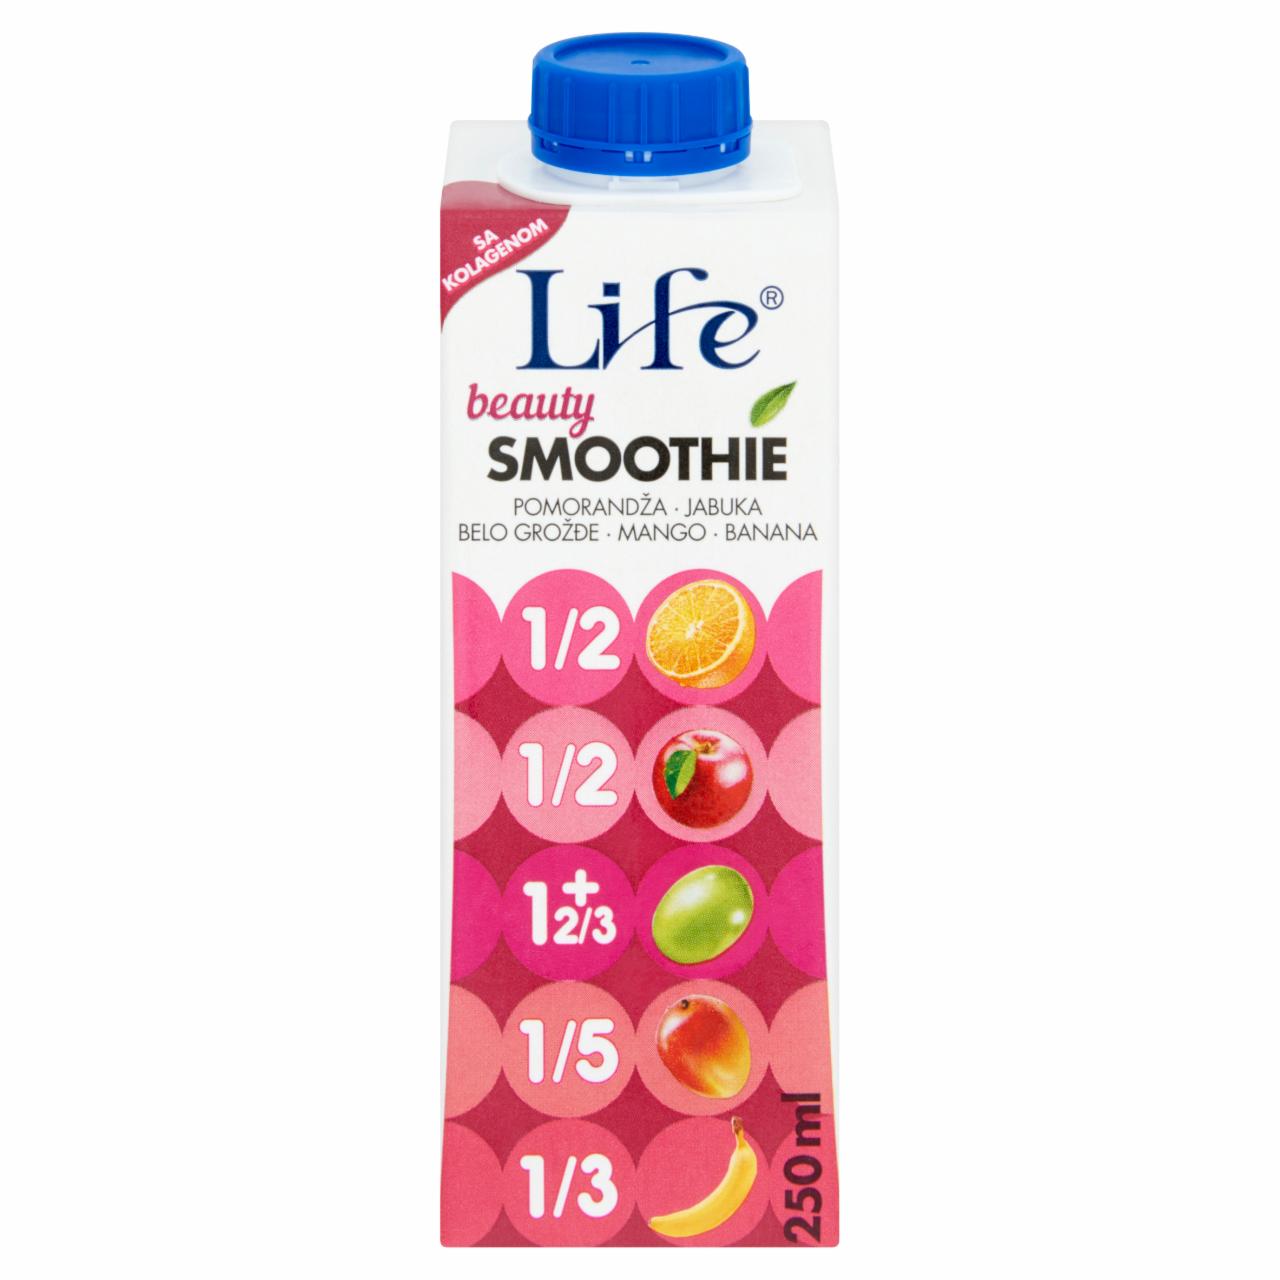 Képek - Life Beauty Smoothie narancs, alma, szőlő, mangó és banán ital hozzáadott kollagénnel 250 ml